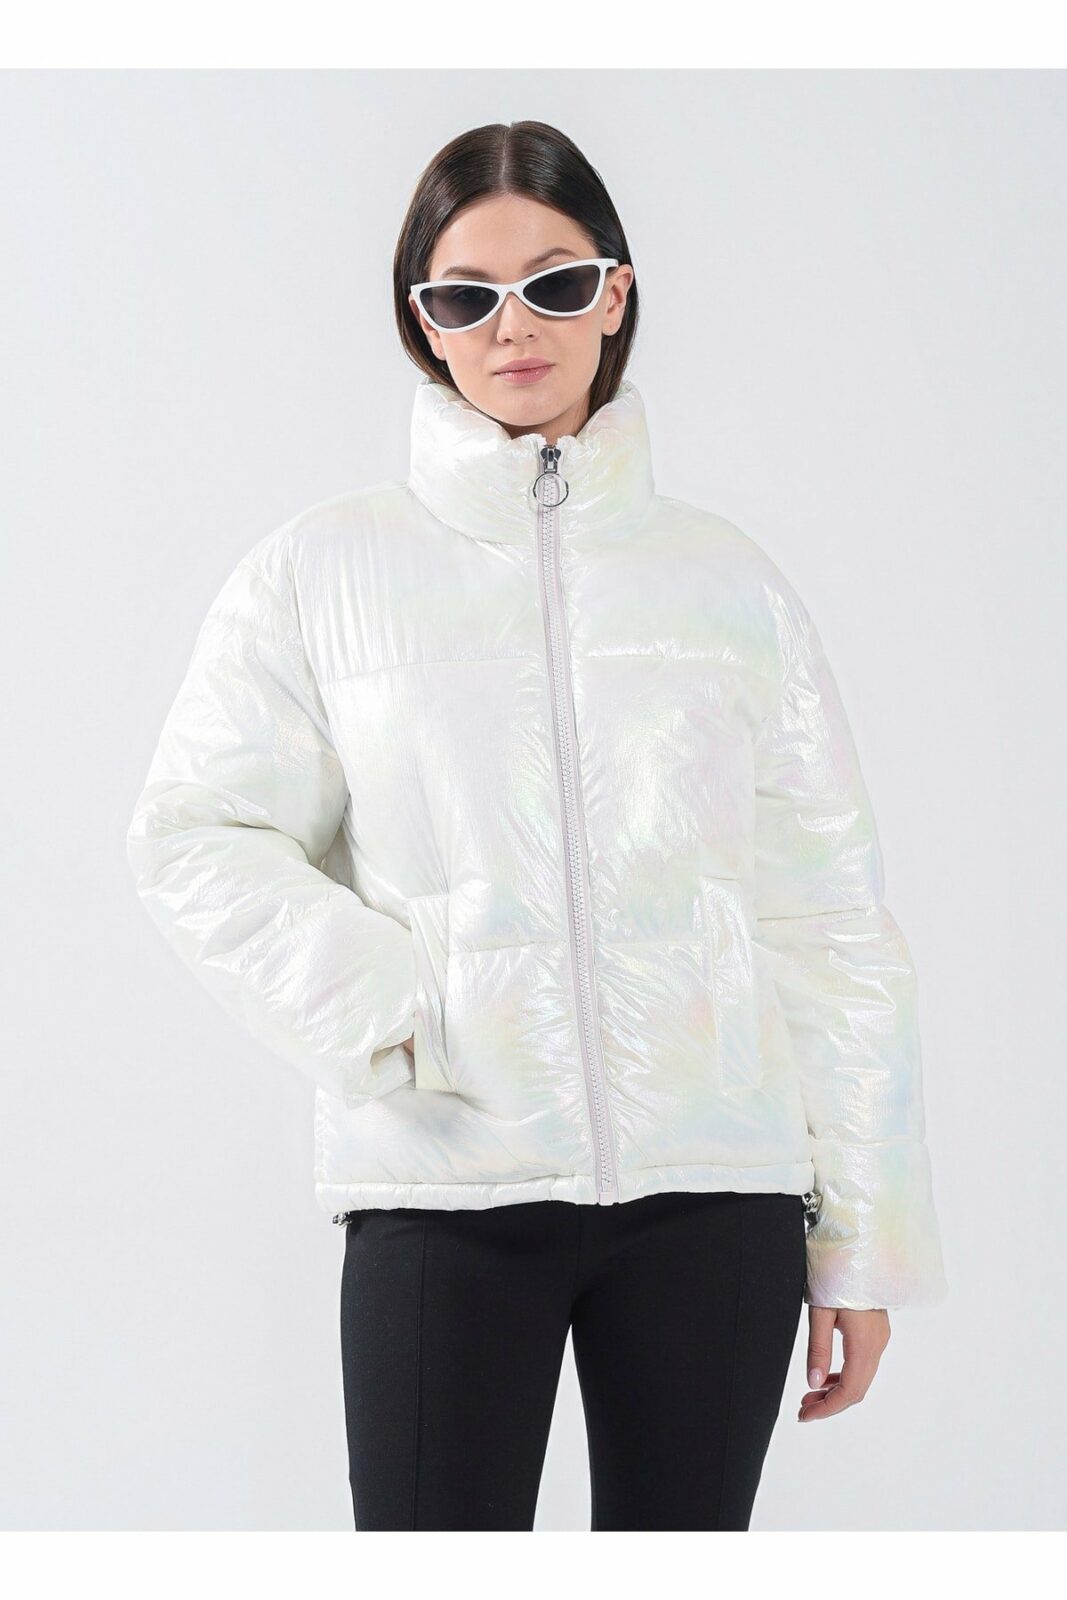 Koton Winter Jacket - White